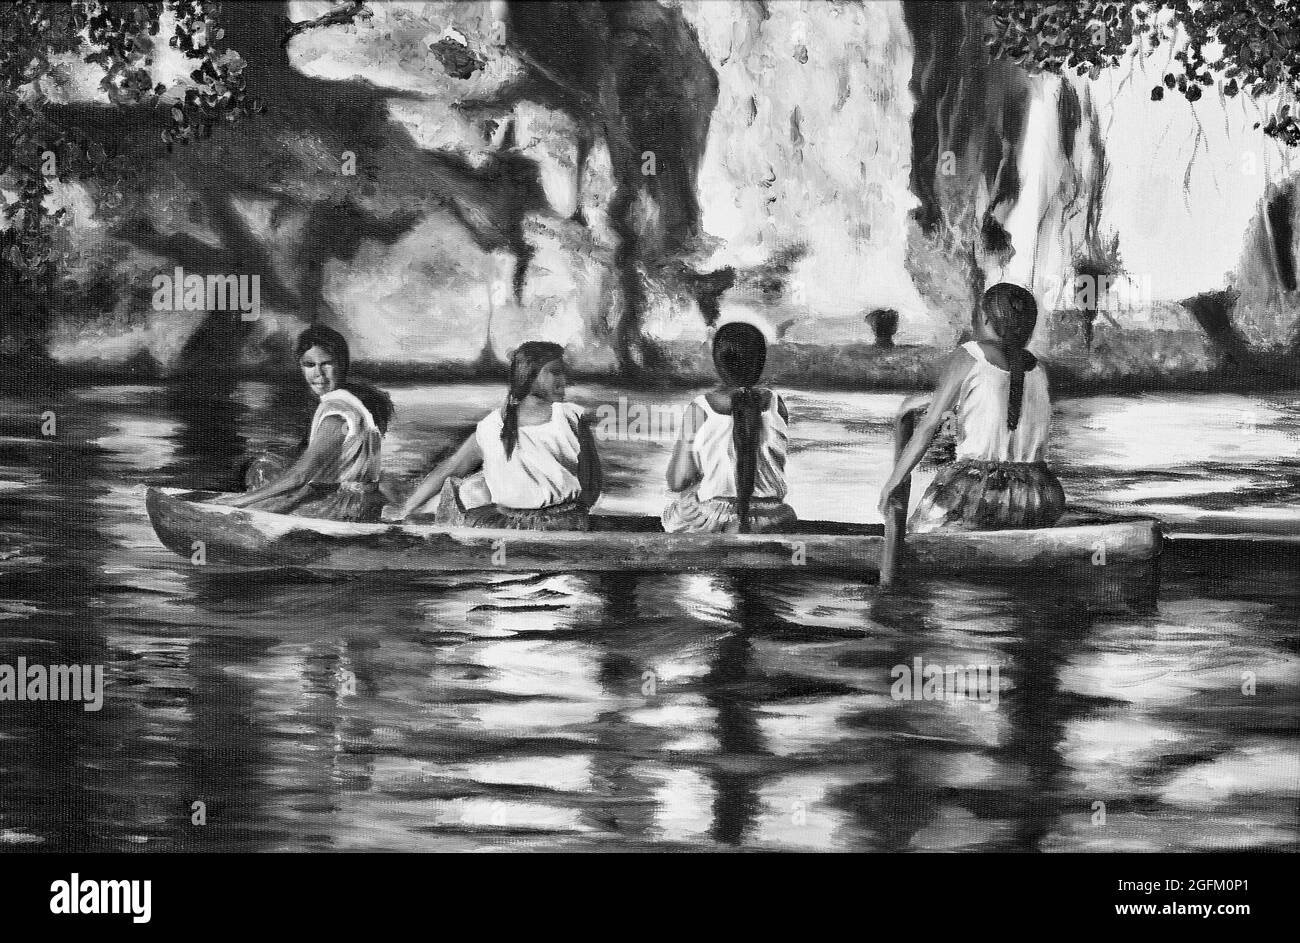 Pittura di tela con gli indiani sulla barca sul fiume Amazzonia in bianco e nero. Foto Stock